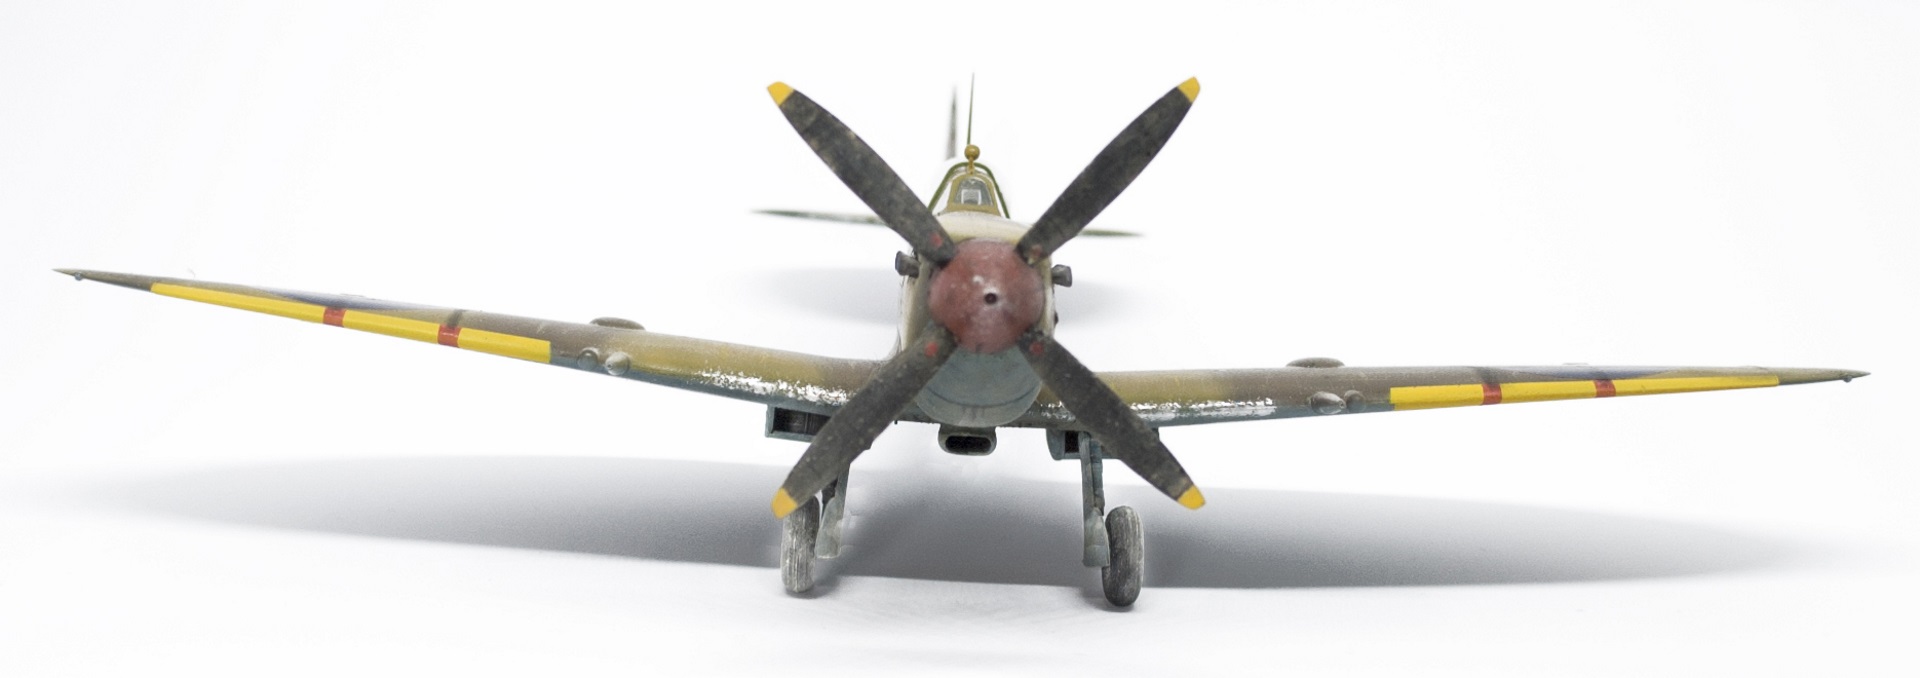 Spitfire Mk IXc "early" - Eduard 1/48 - Cirque Skalski - Scénette FINIE 18041310232722113415666336